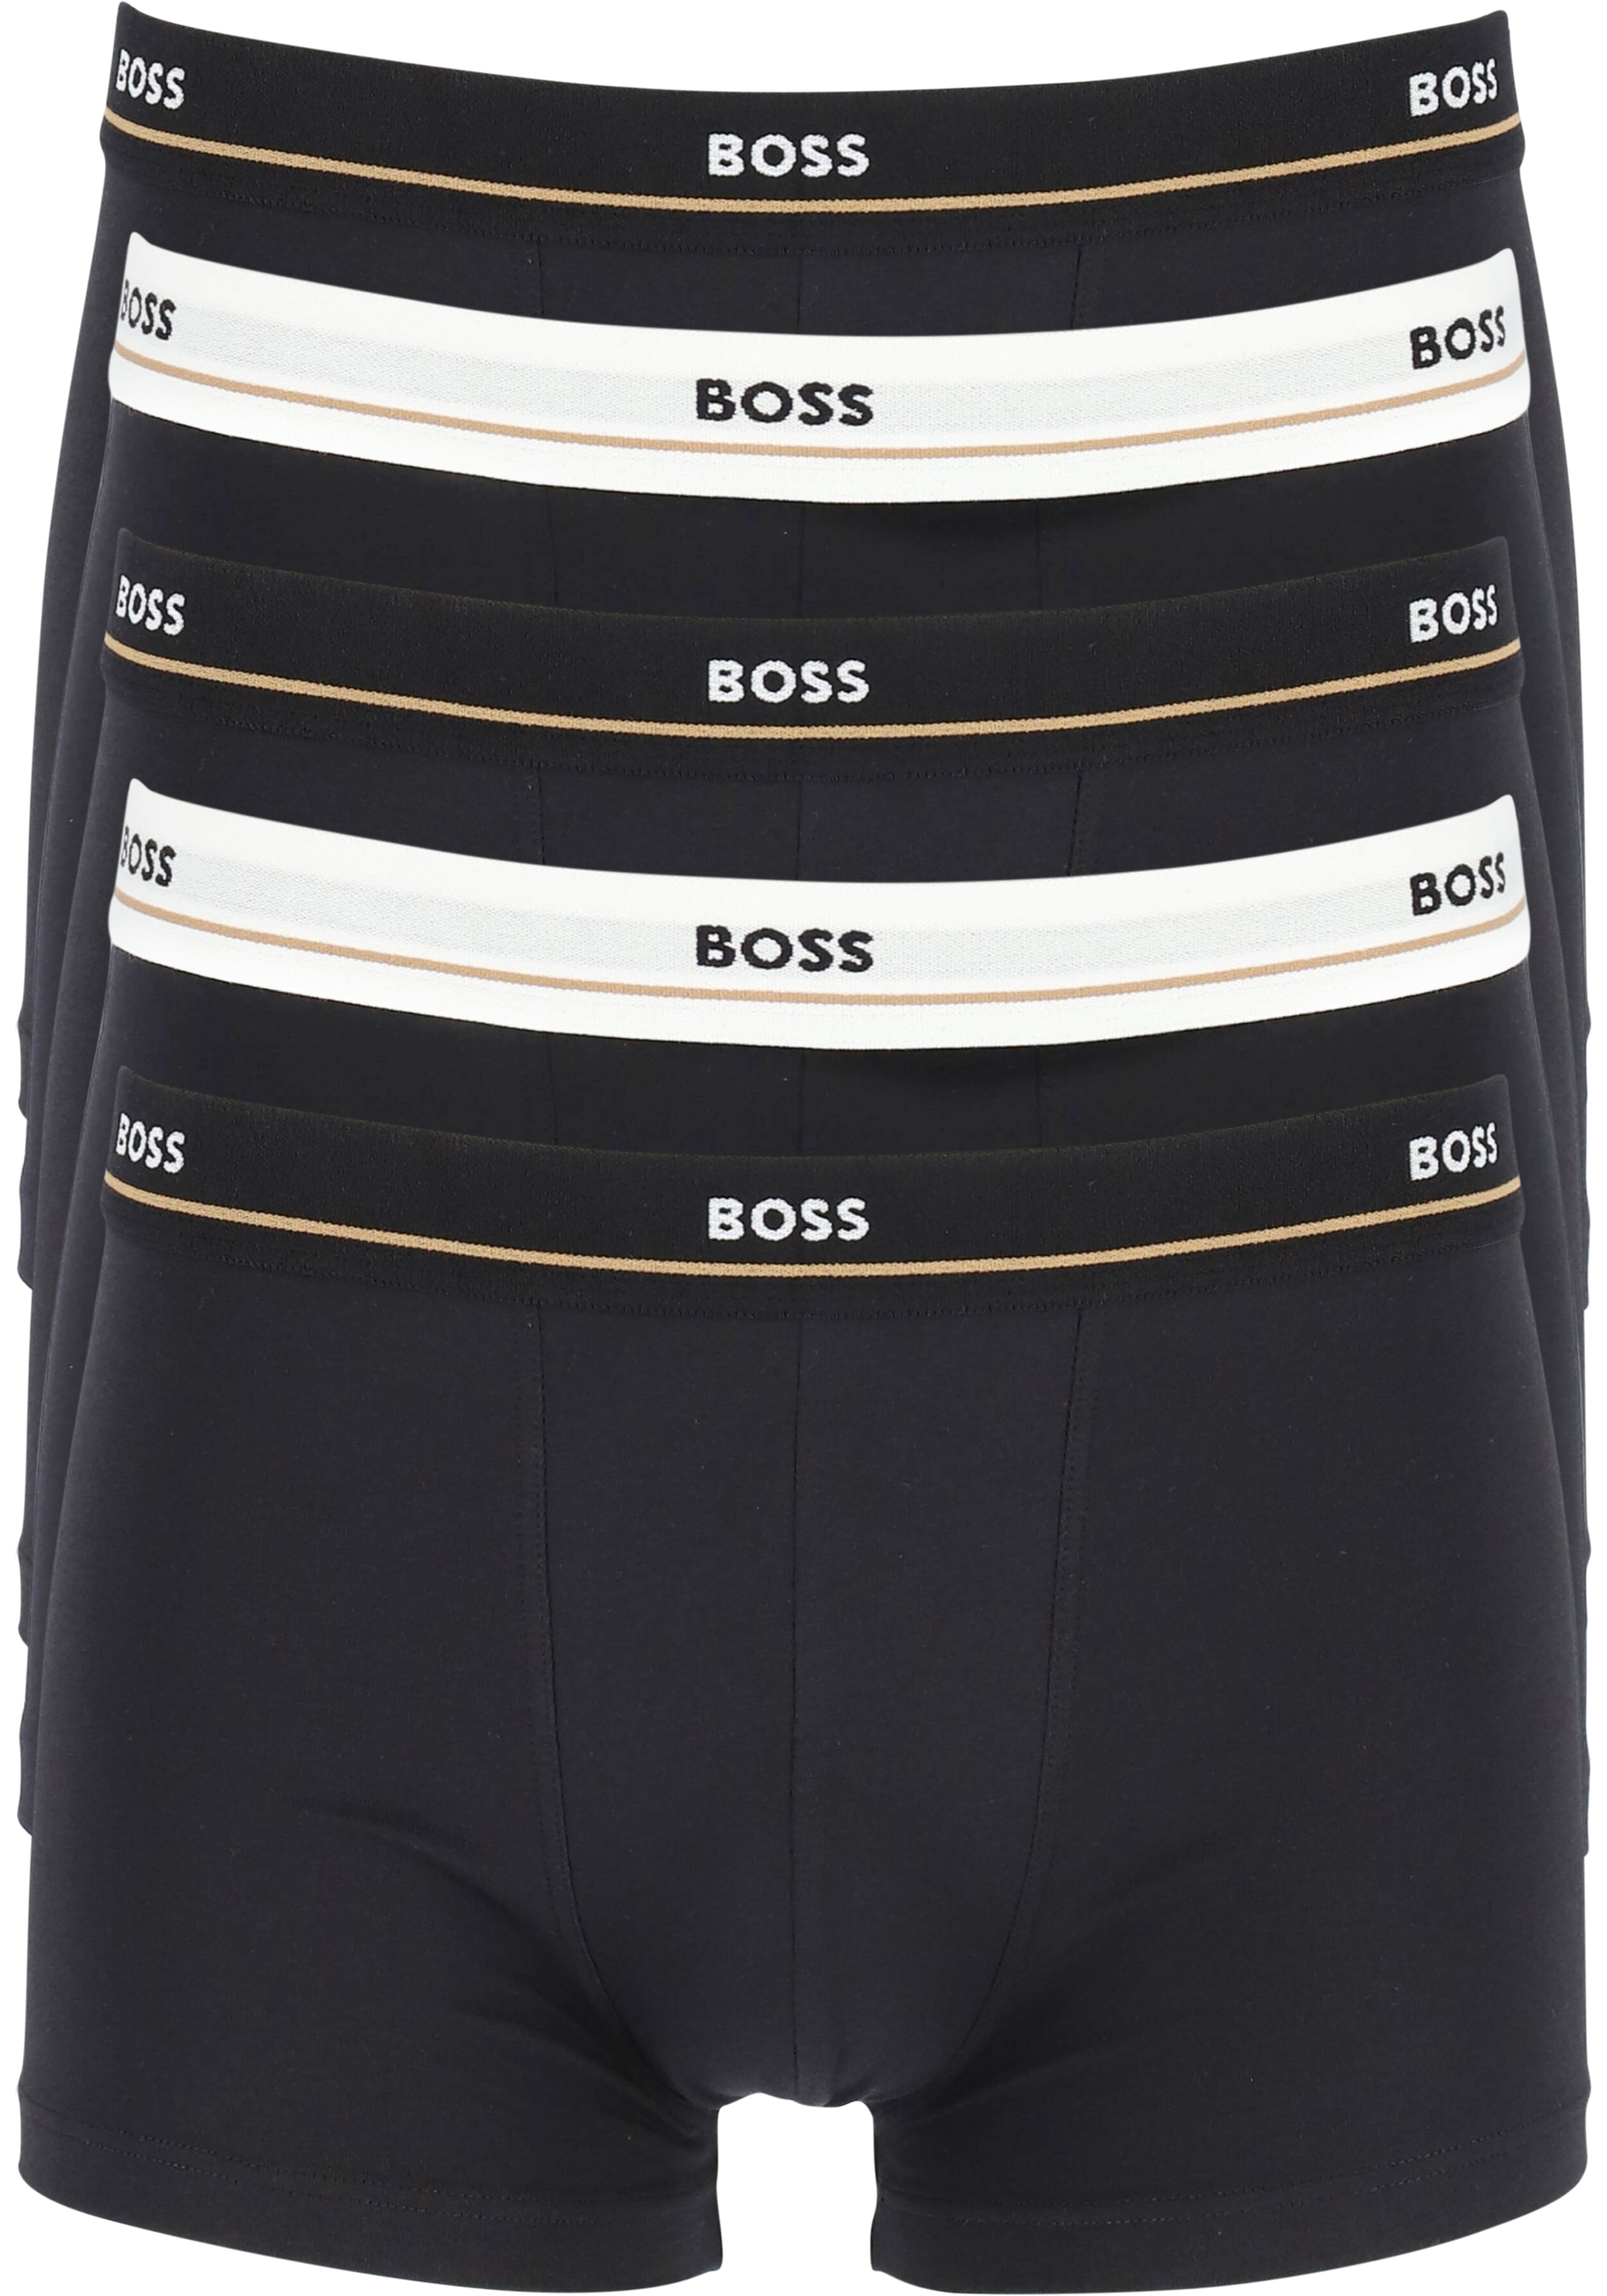 HUGO BOSS Essential trunks (5-pack), heren boxers kort, zwart